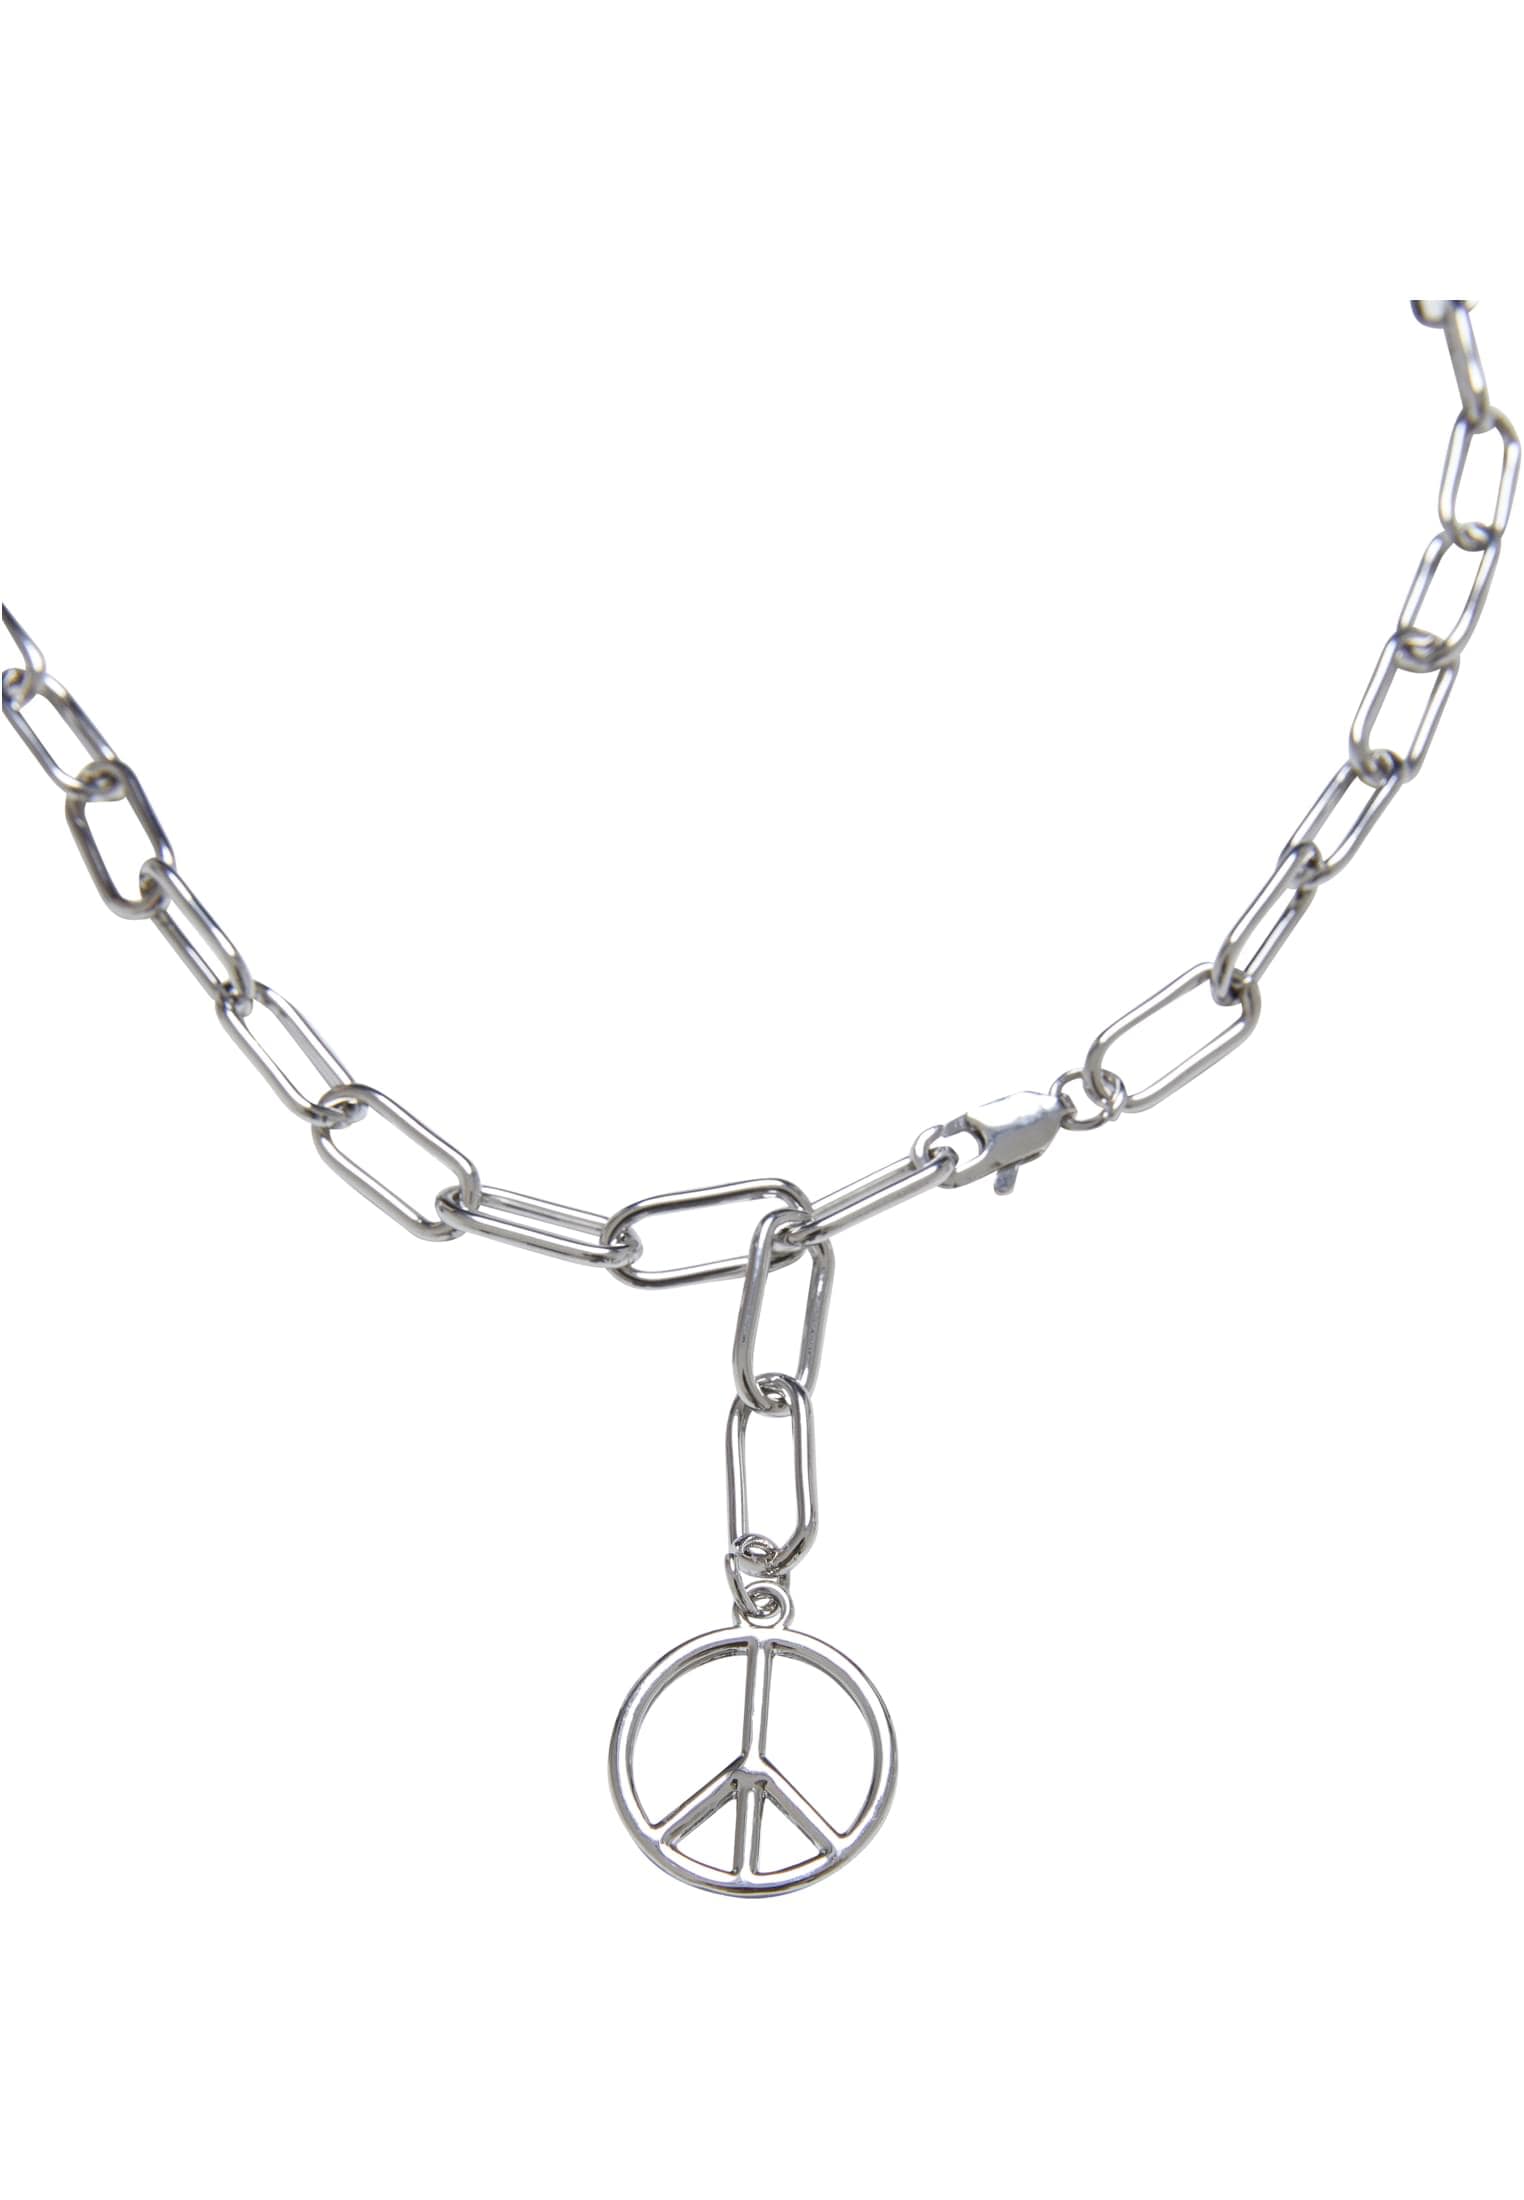 URBAN Peace kaufen »Accessoires Chain Y | Necklace« CLASSICS für BAUR Edelstahlkette Pendant